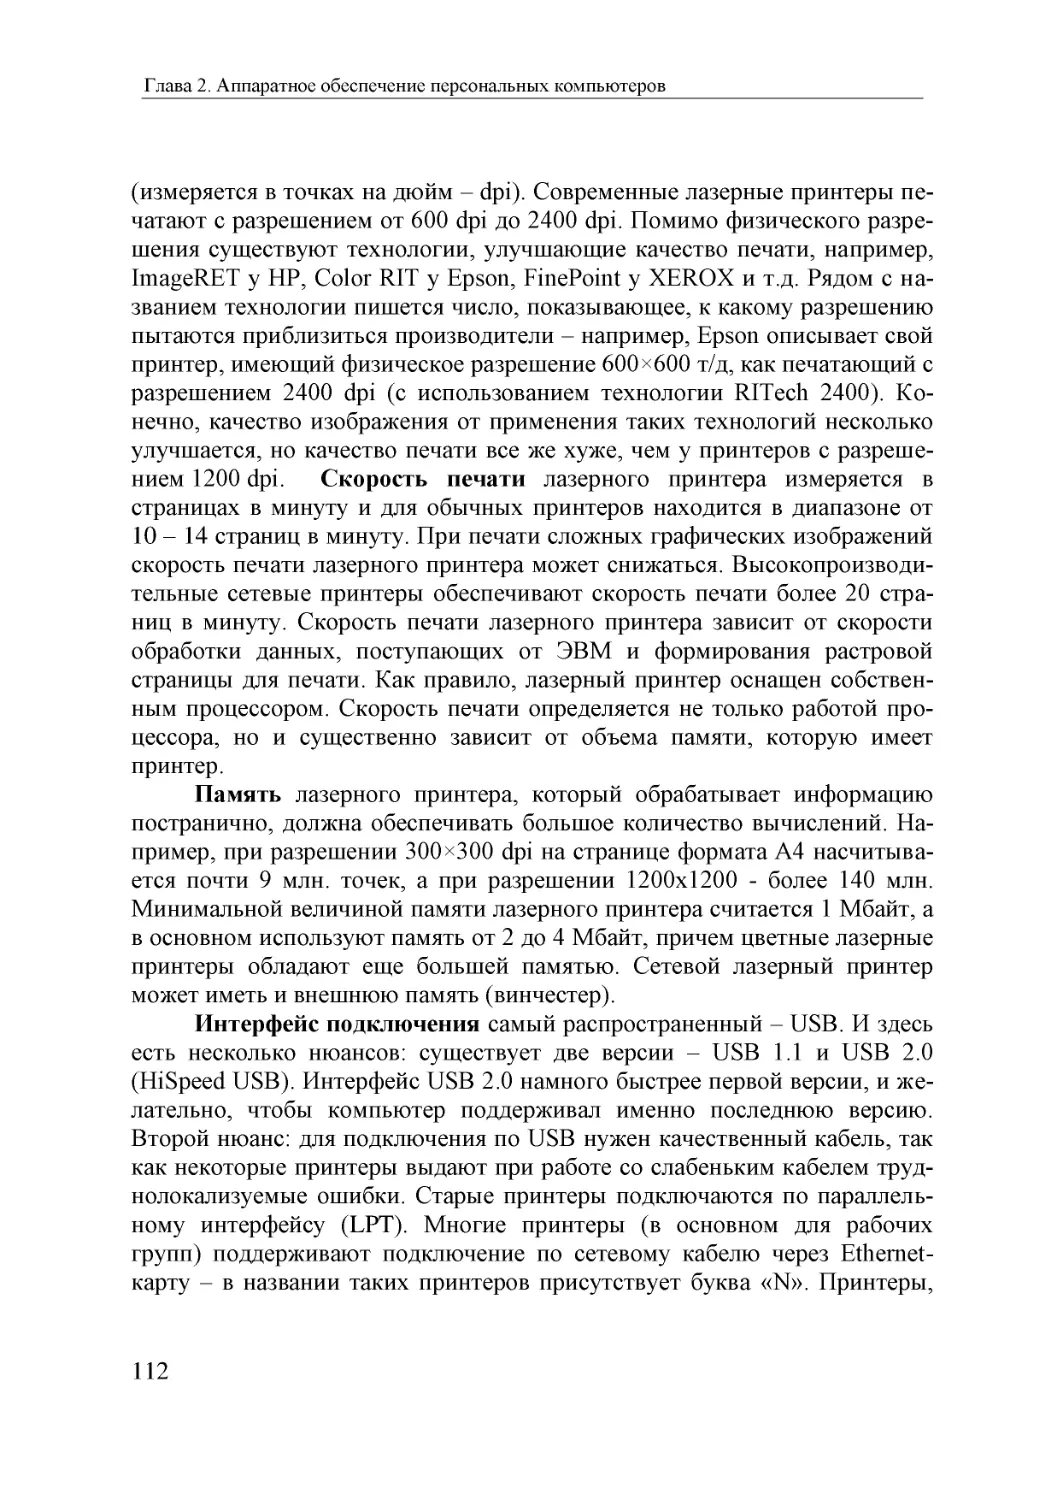 Informatika_Uchebnik_dlya_vuzov_2010 112